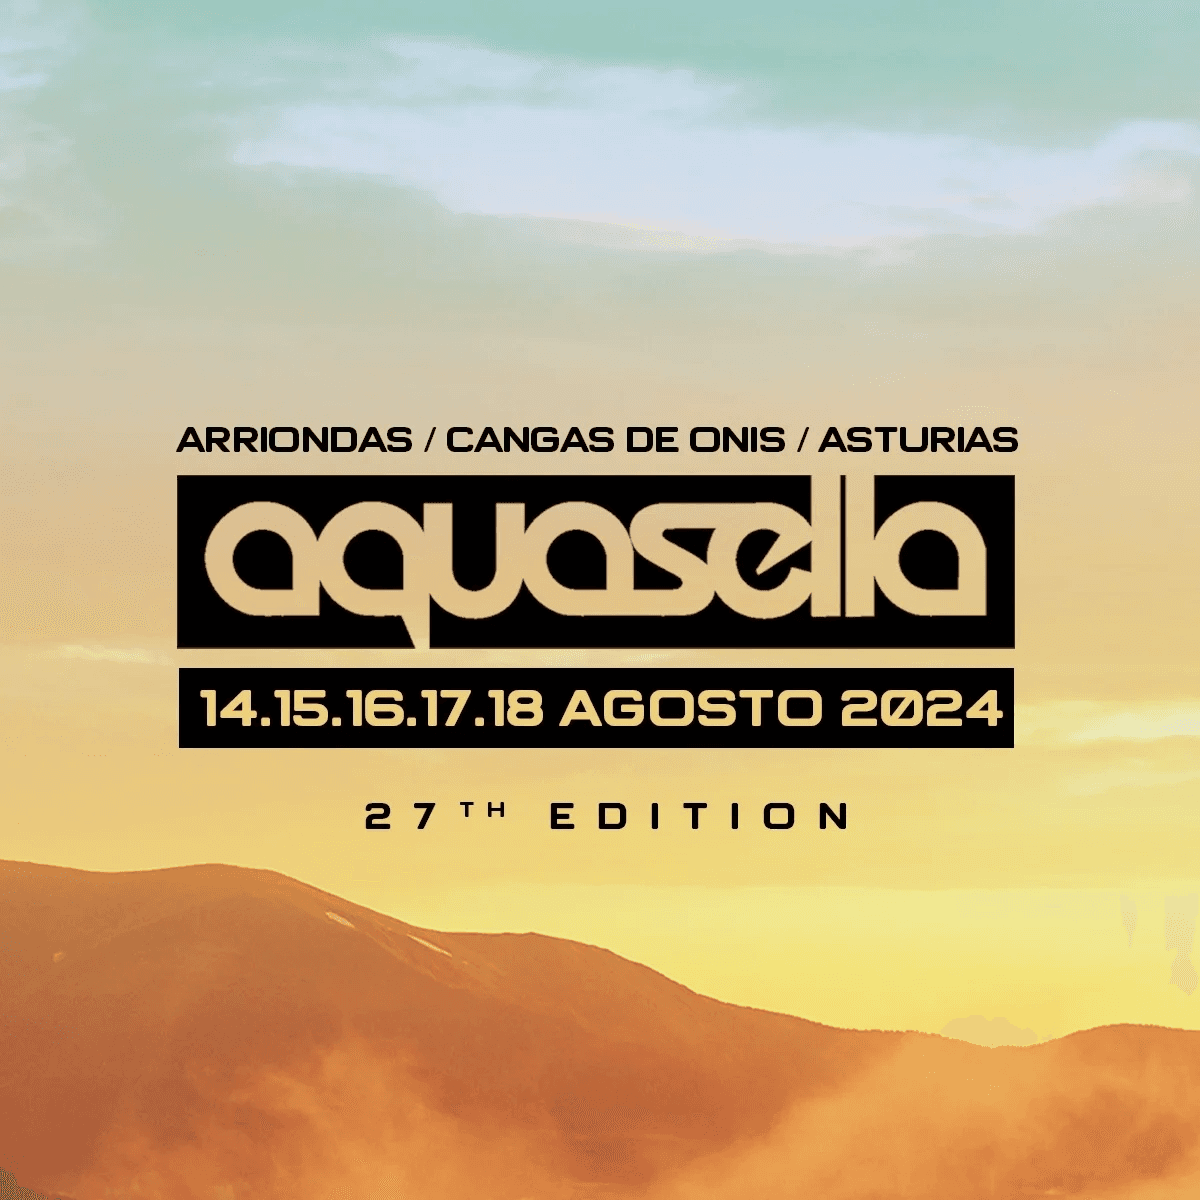 Festival Aquasella